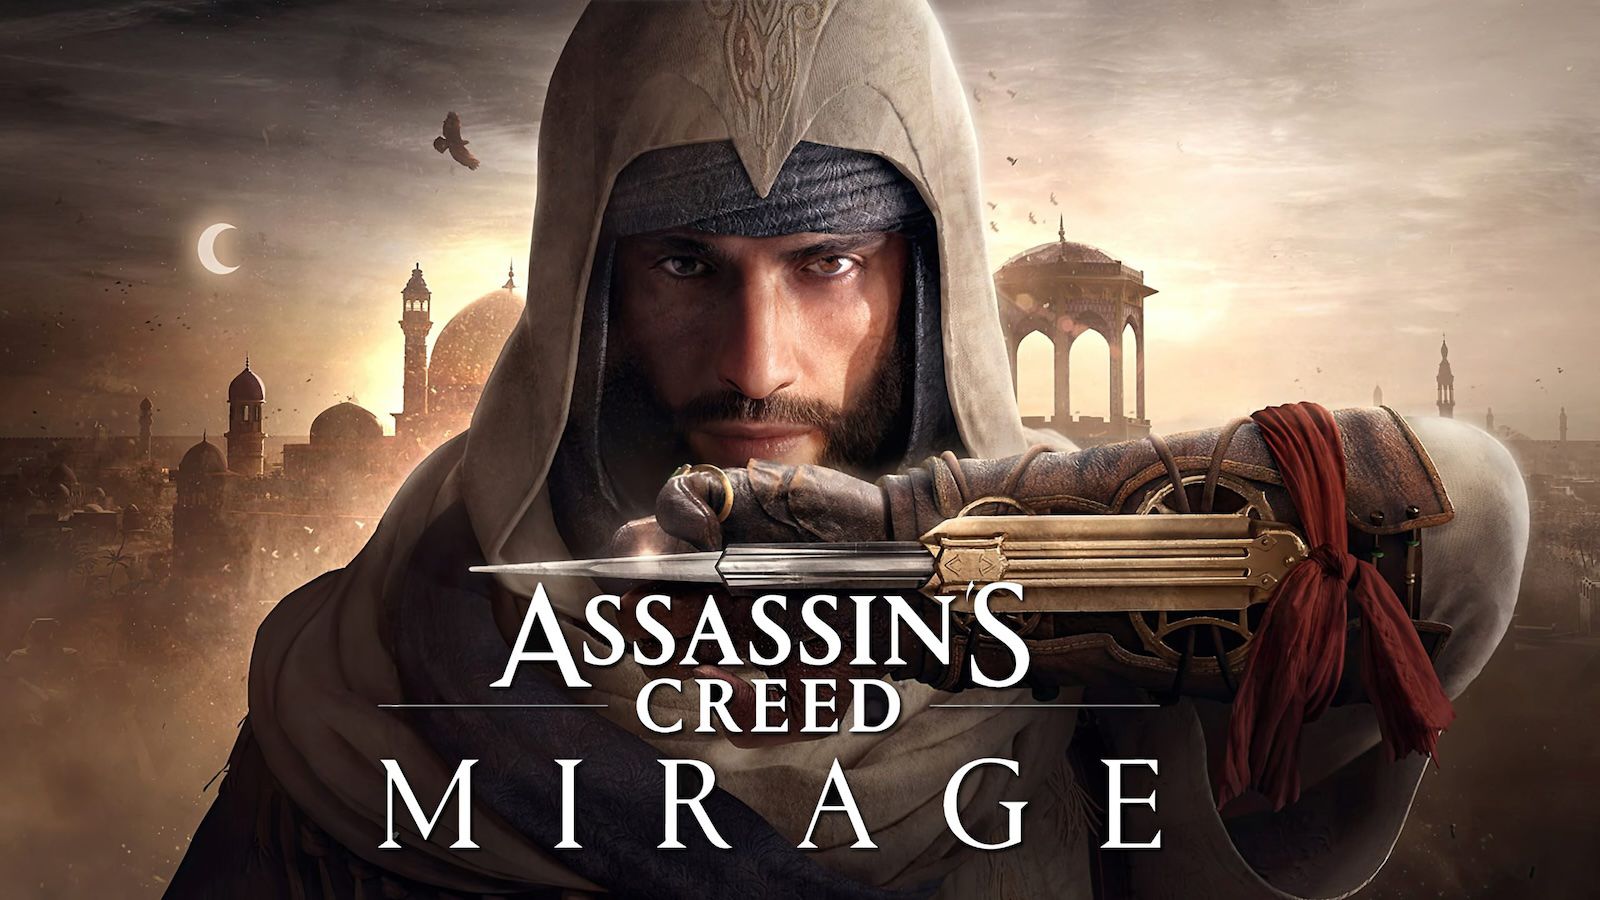 Assassin’s Creed Mirage выйдет на iPhone в июне. Стартовал предзаказ, но не в России